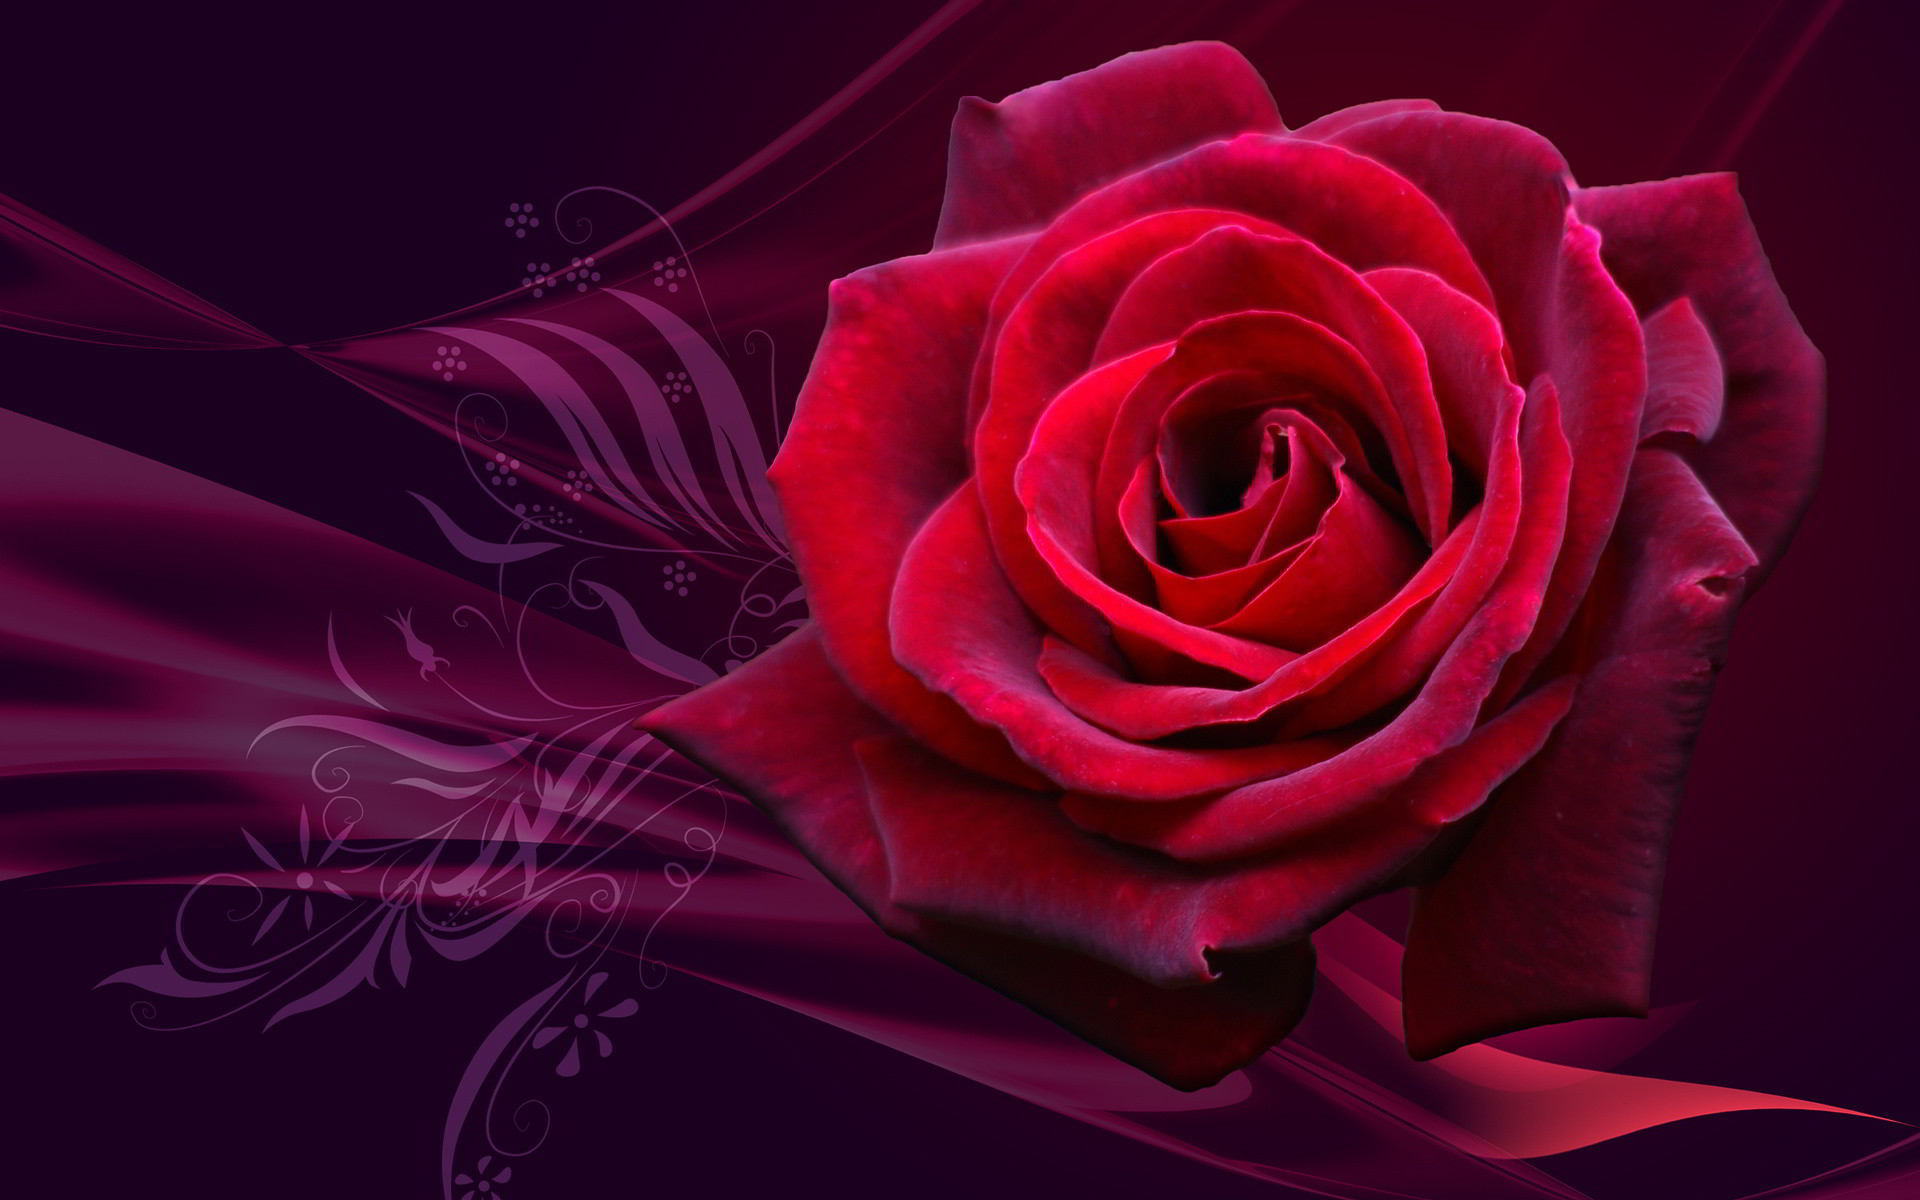 Hoa hồng 3d: Giúp đem lại sự sống động cho không gian của bạn, hoa hồng 3D sẽ thật sự làm nổi bật vẻ đẹp rực rỡ và gợi cảm của loài hoa này. Hãy cùng khám phá những chi tiết tuyệt vời của hoa hồng 3D thông qua hình ảnh và cảm nhận sự sống động của chúng!